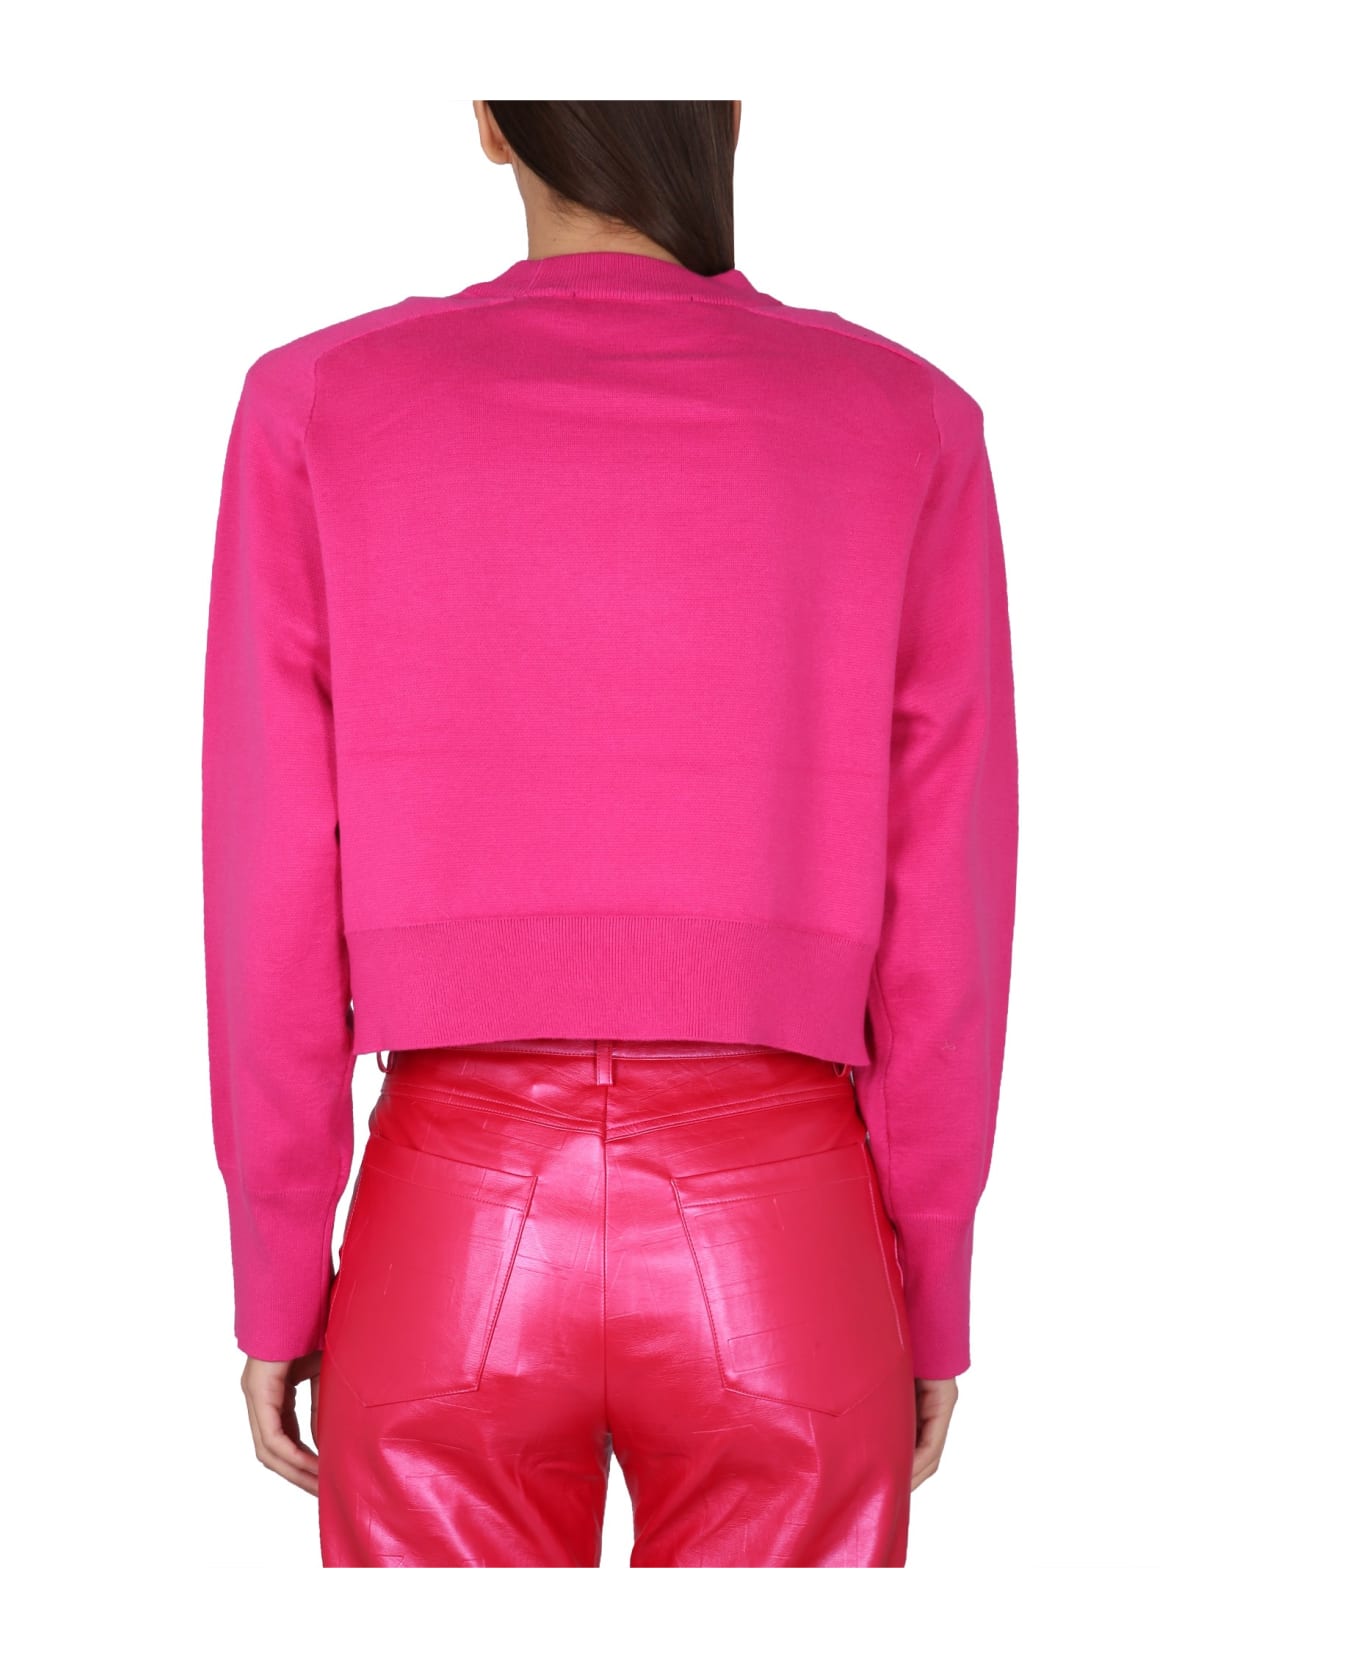 Rotate by Birger Christensen Sweatshirt With Logo - Pink Glo